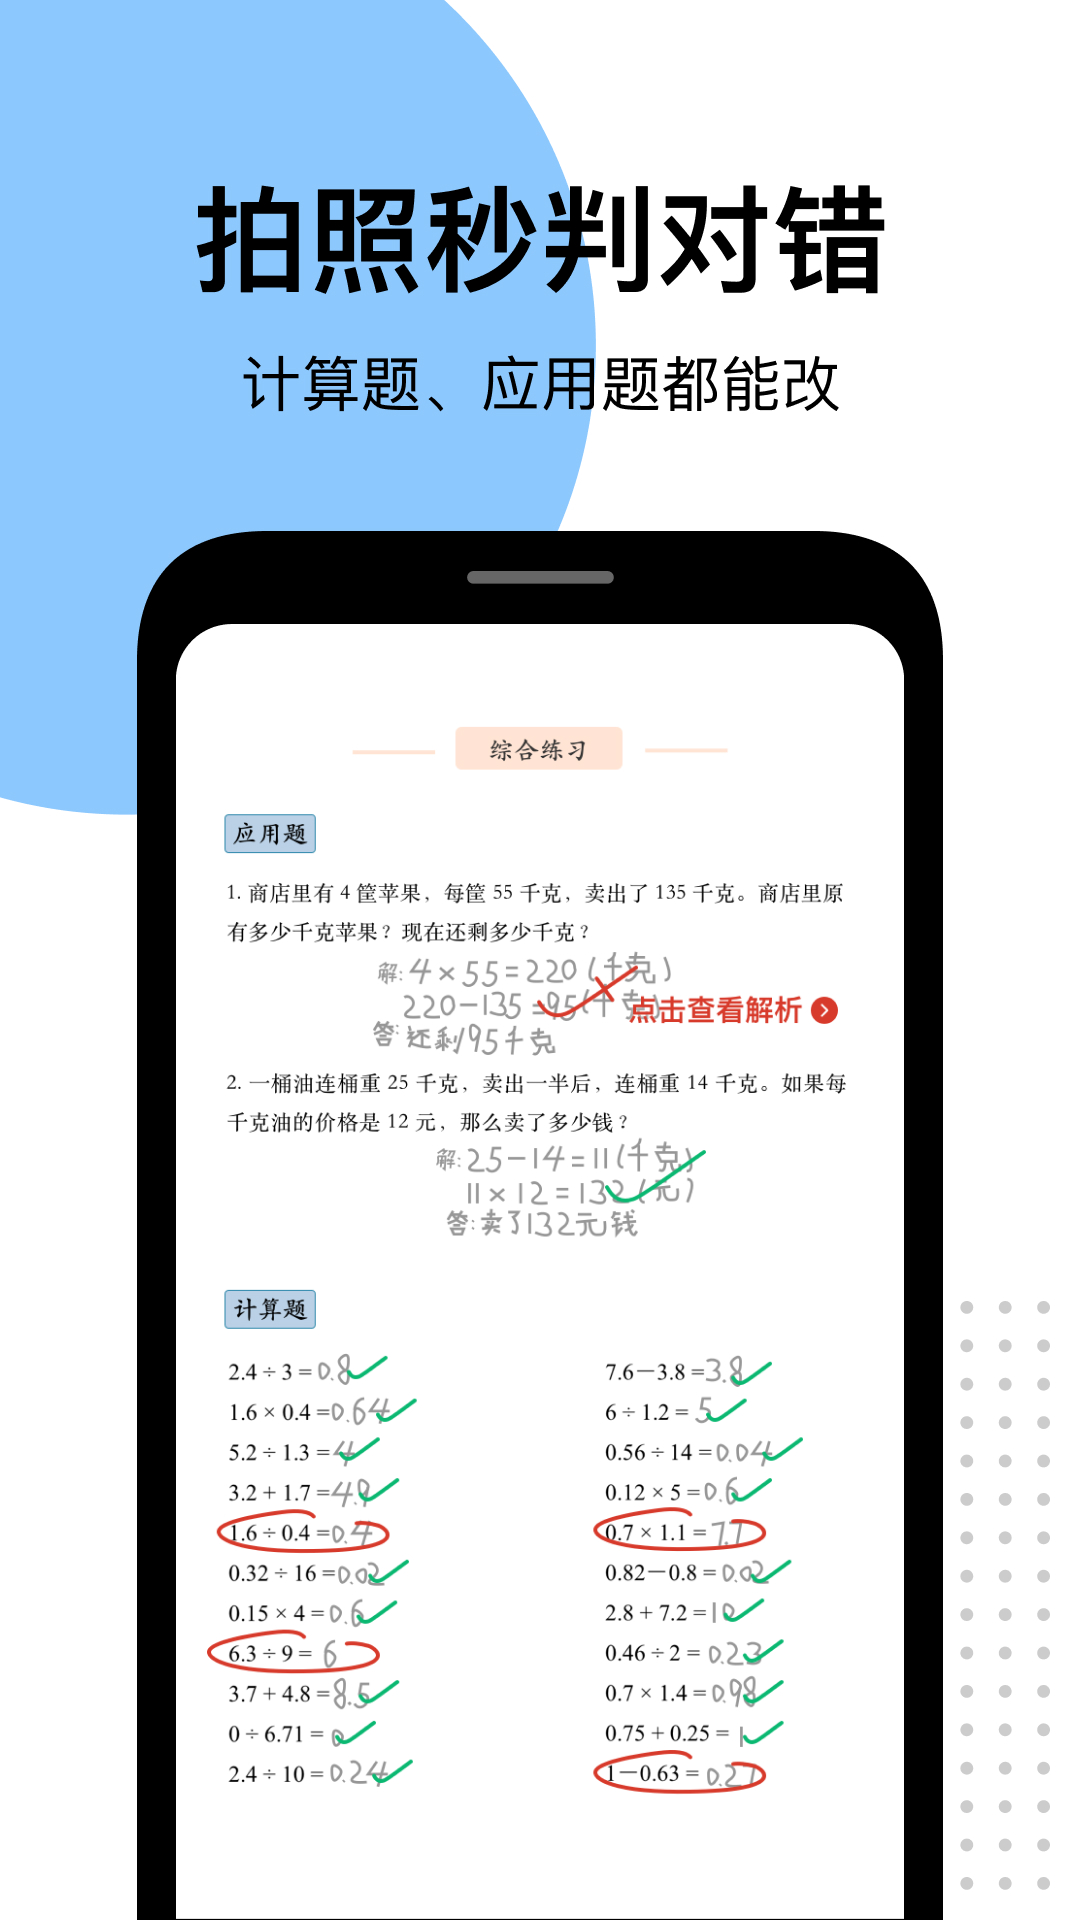 爱作业app快速批改作业 4.20.2